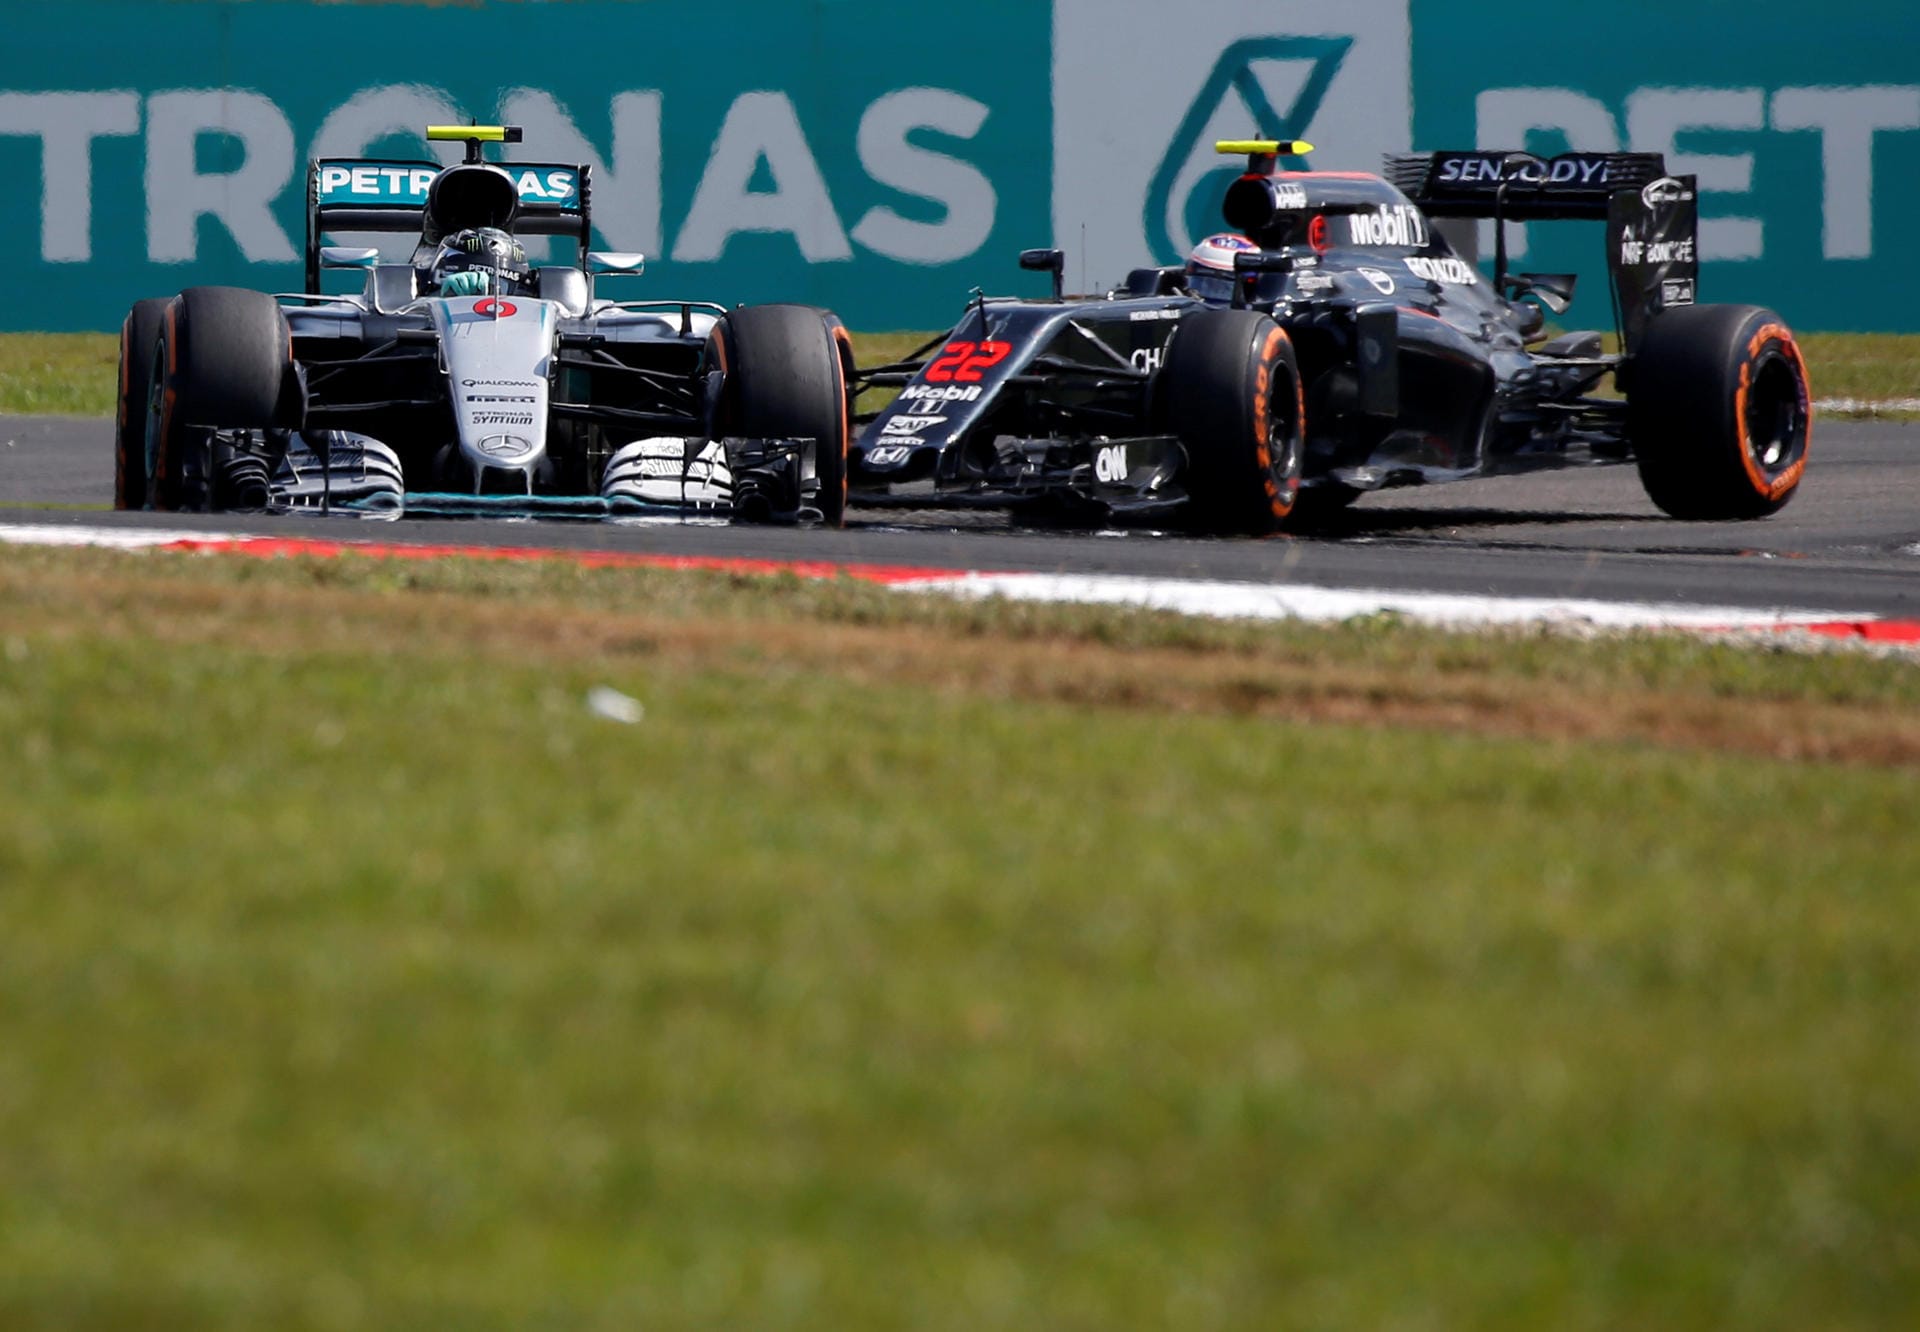 Nach seinem Startunfall kämpft sich Rosberg allmählich nach vorn. Nach dem Abschuss durch Vettel auf Rang 16 zurückgefallen, belegt der WM-Spitzenreiter nach 28 von 56 Runden den fünften Platz.